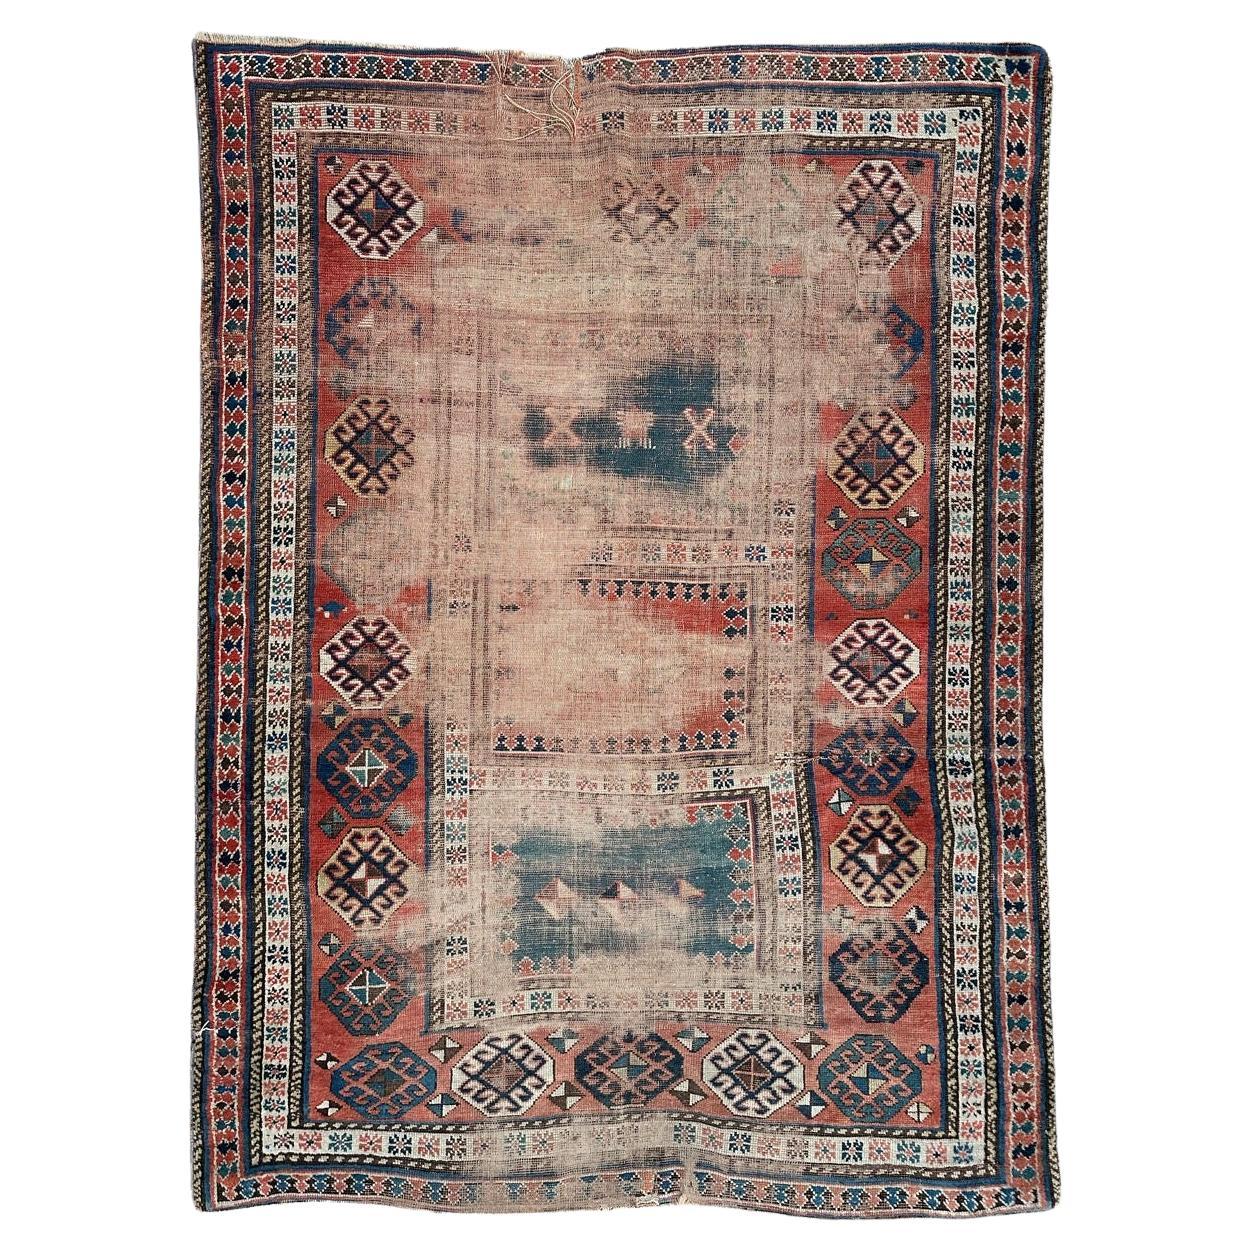 Le joli tapis Kazak antique et vieilli de Bobyrug